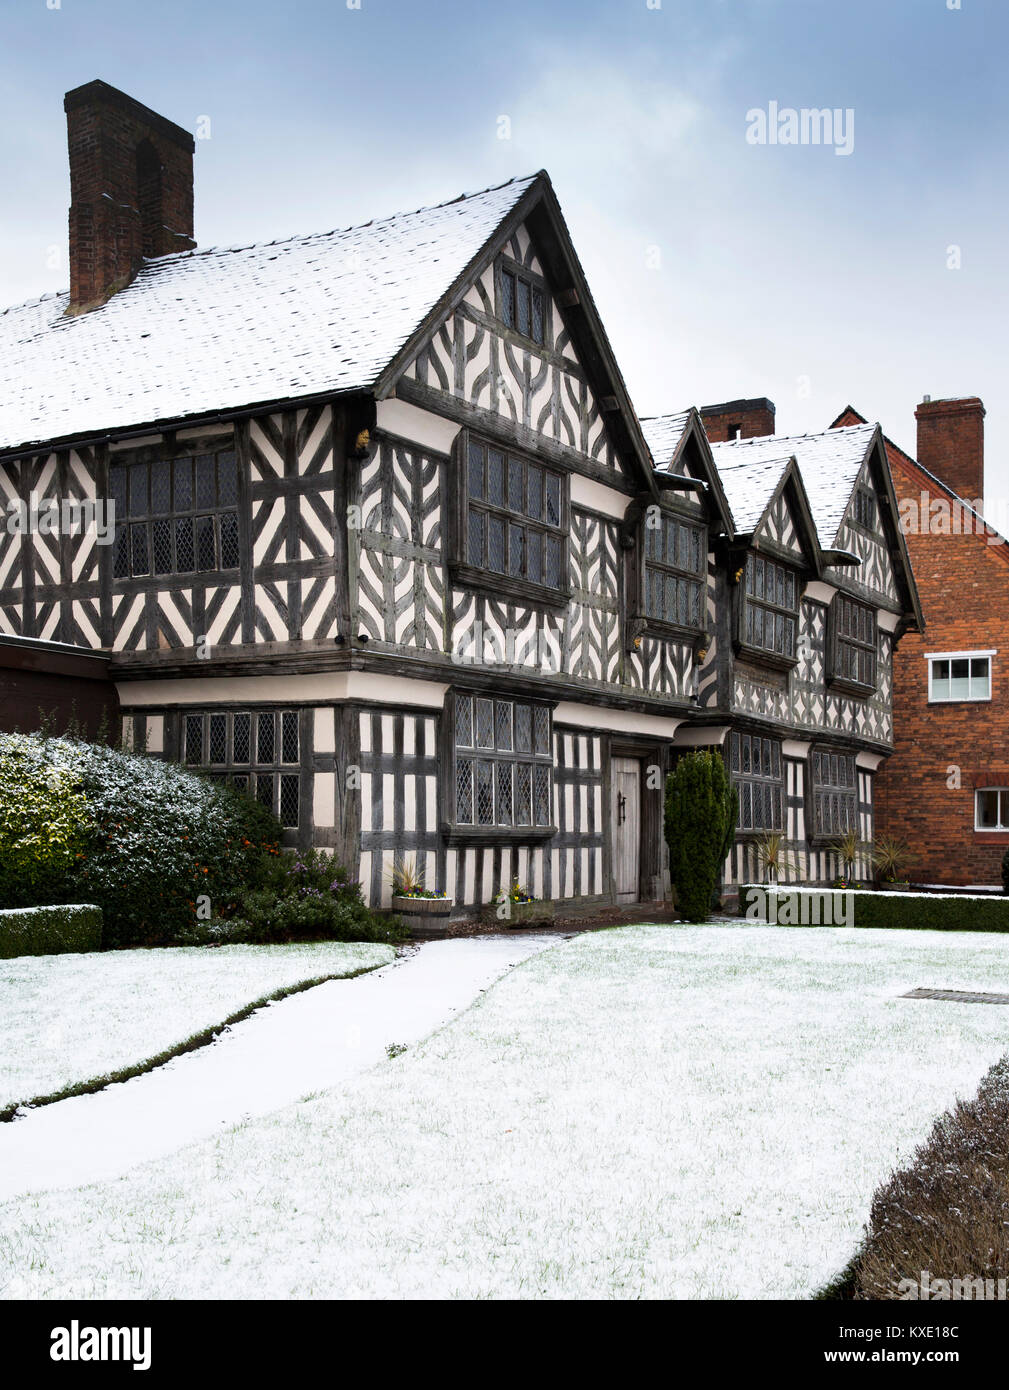 Großbritannien, England, Cheshire, Nantwich, London Road, 1577 Kirchen Herrenhaus, eines der ältesten Gebäude der Stadt im Winter schnee Stockfoto